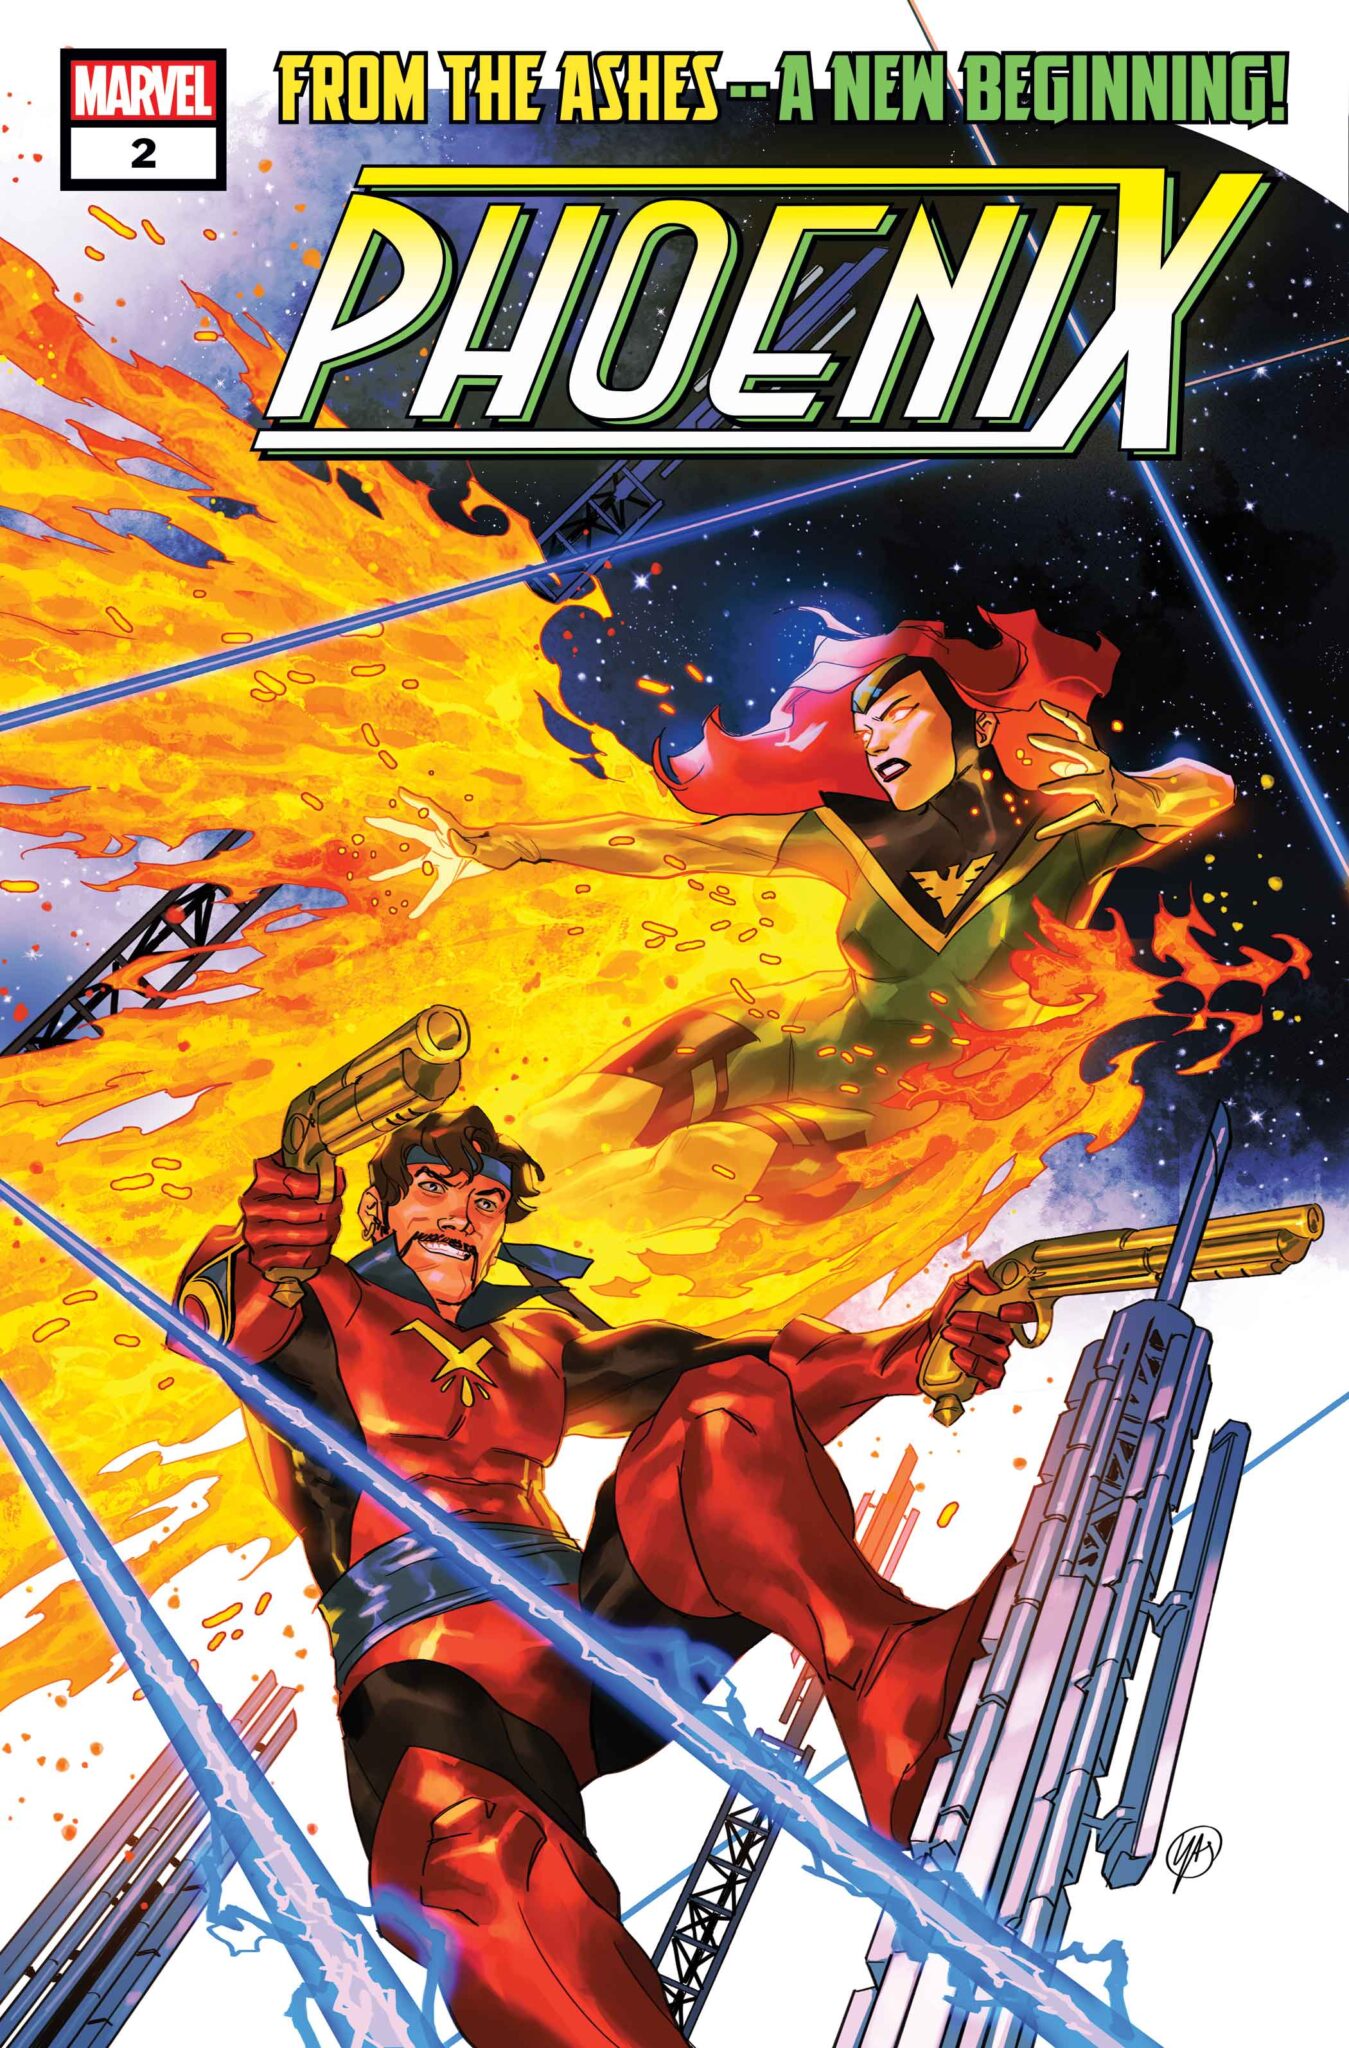 PHOENIX #2 cover